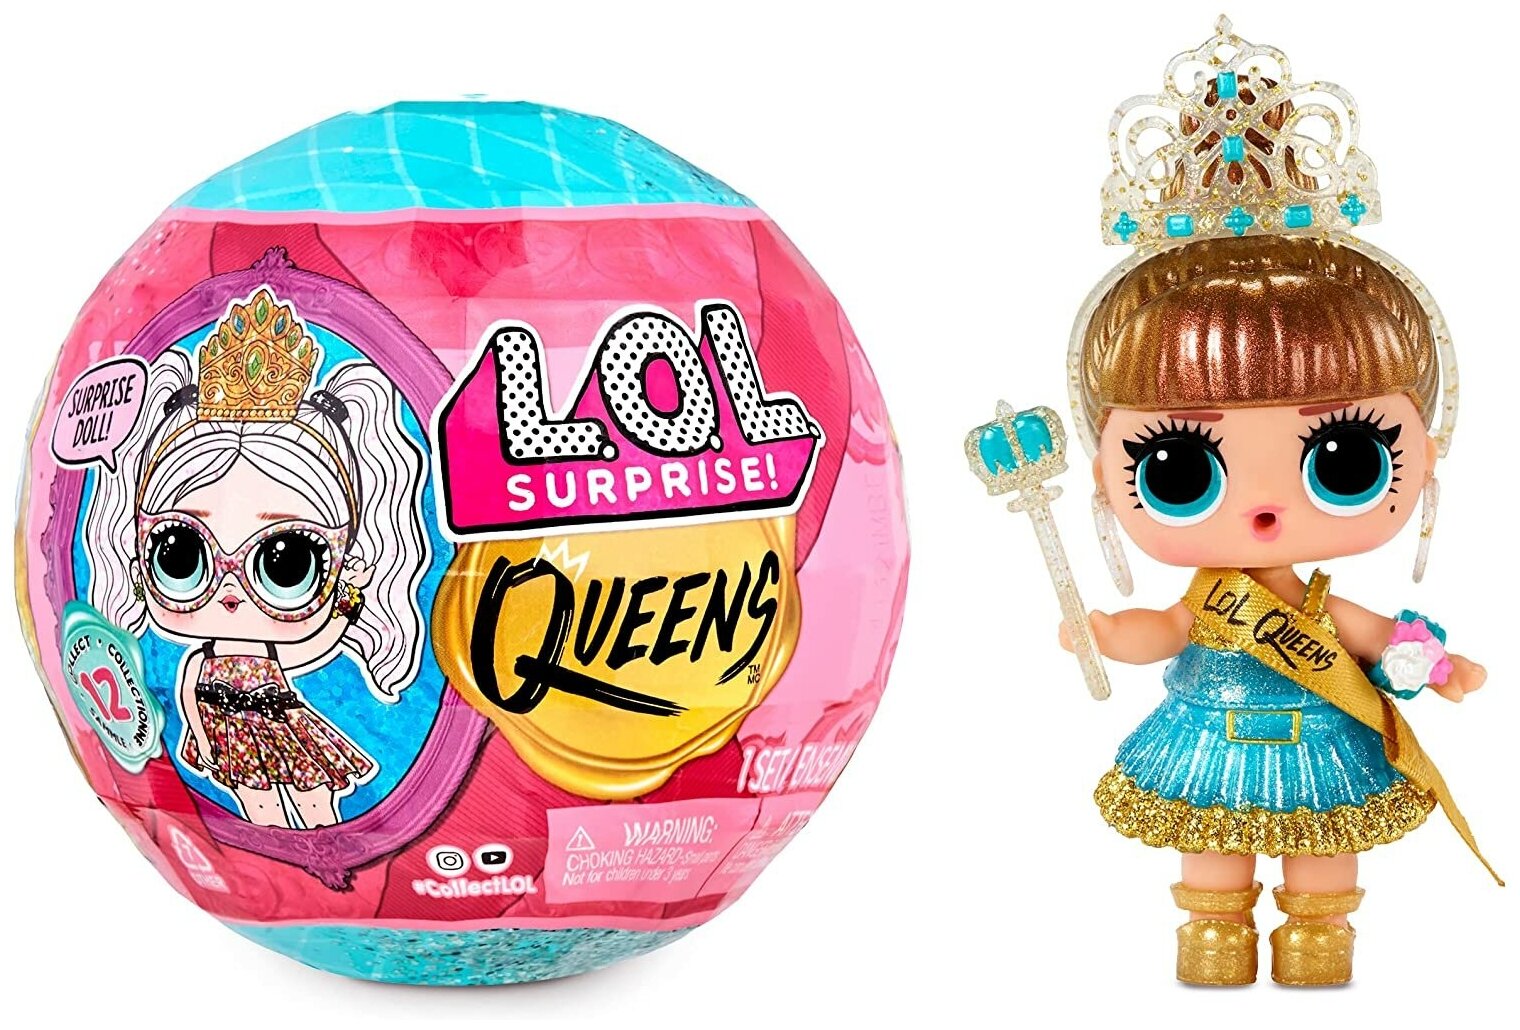 Кукла LOL Surprise Queens 579830 кукла ЛОЛ сюрприз Королевы / шарик ЛОЛ Квинс / Игрушка сюрприз для девочки